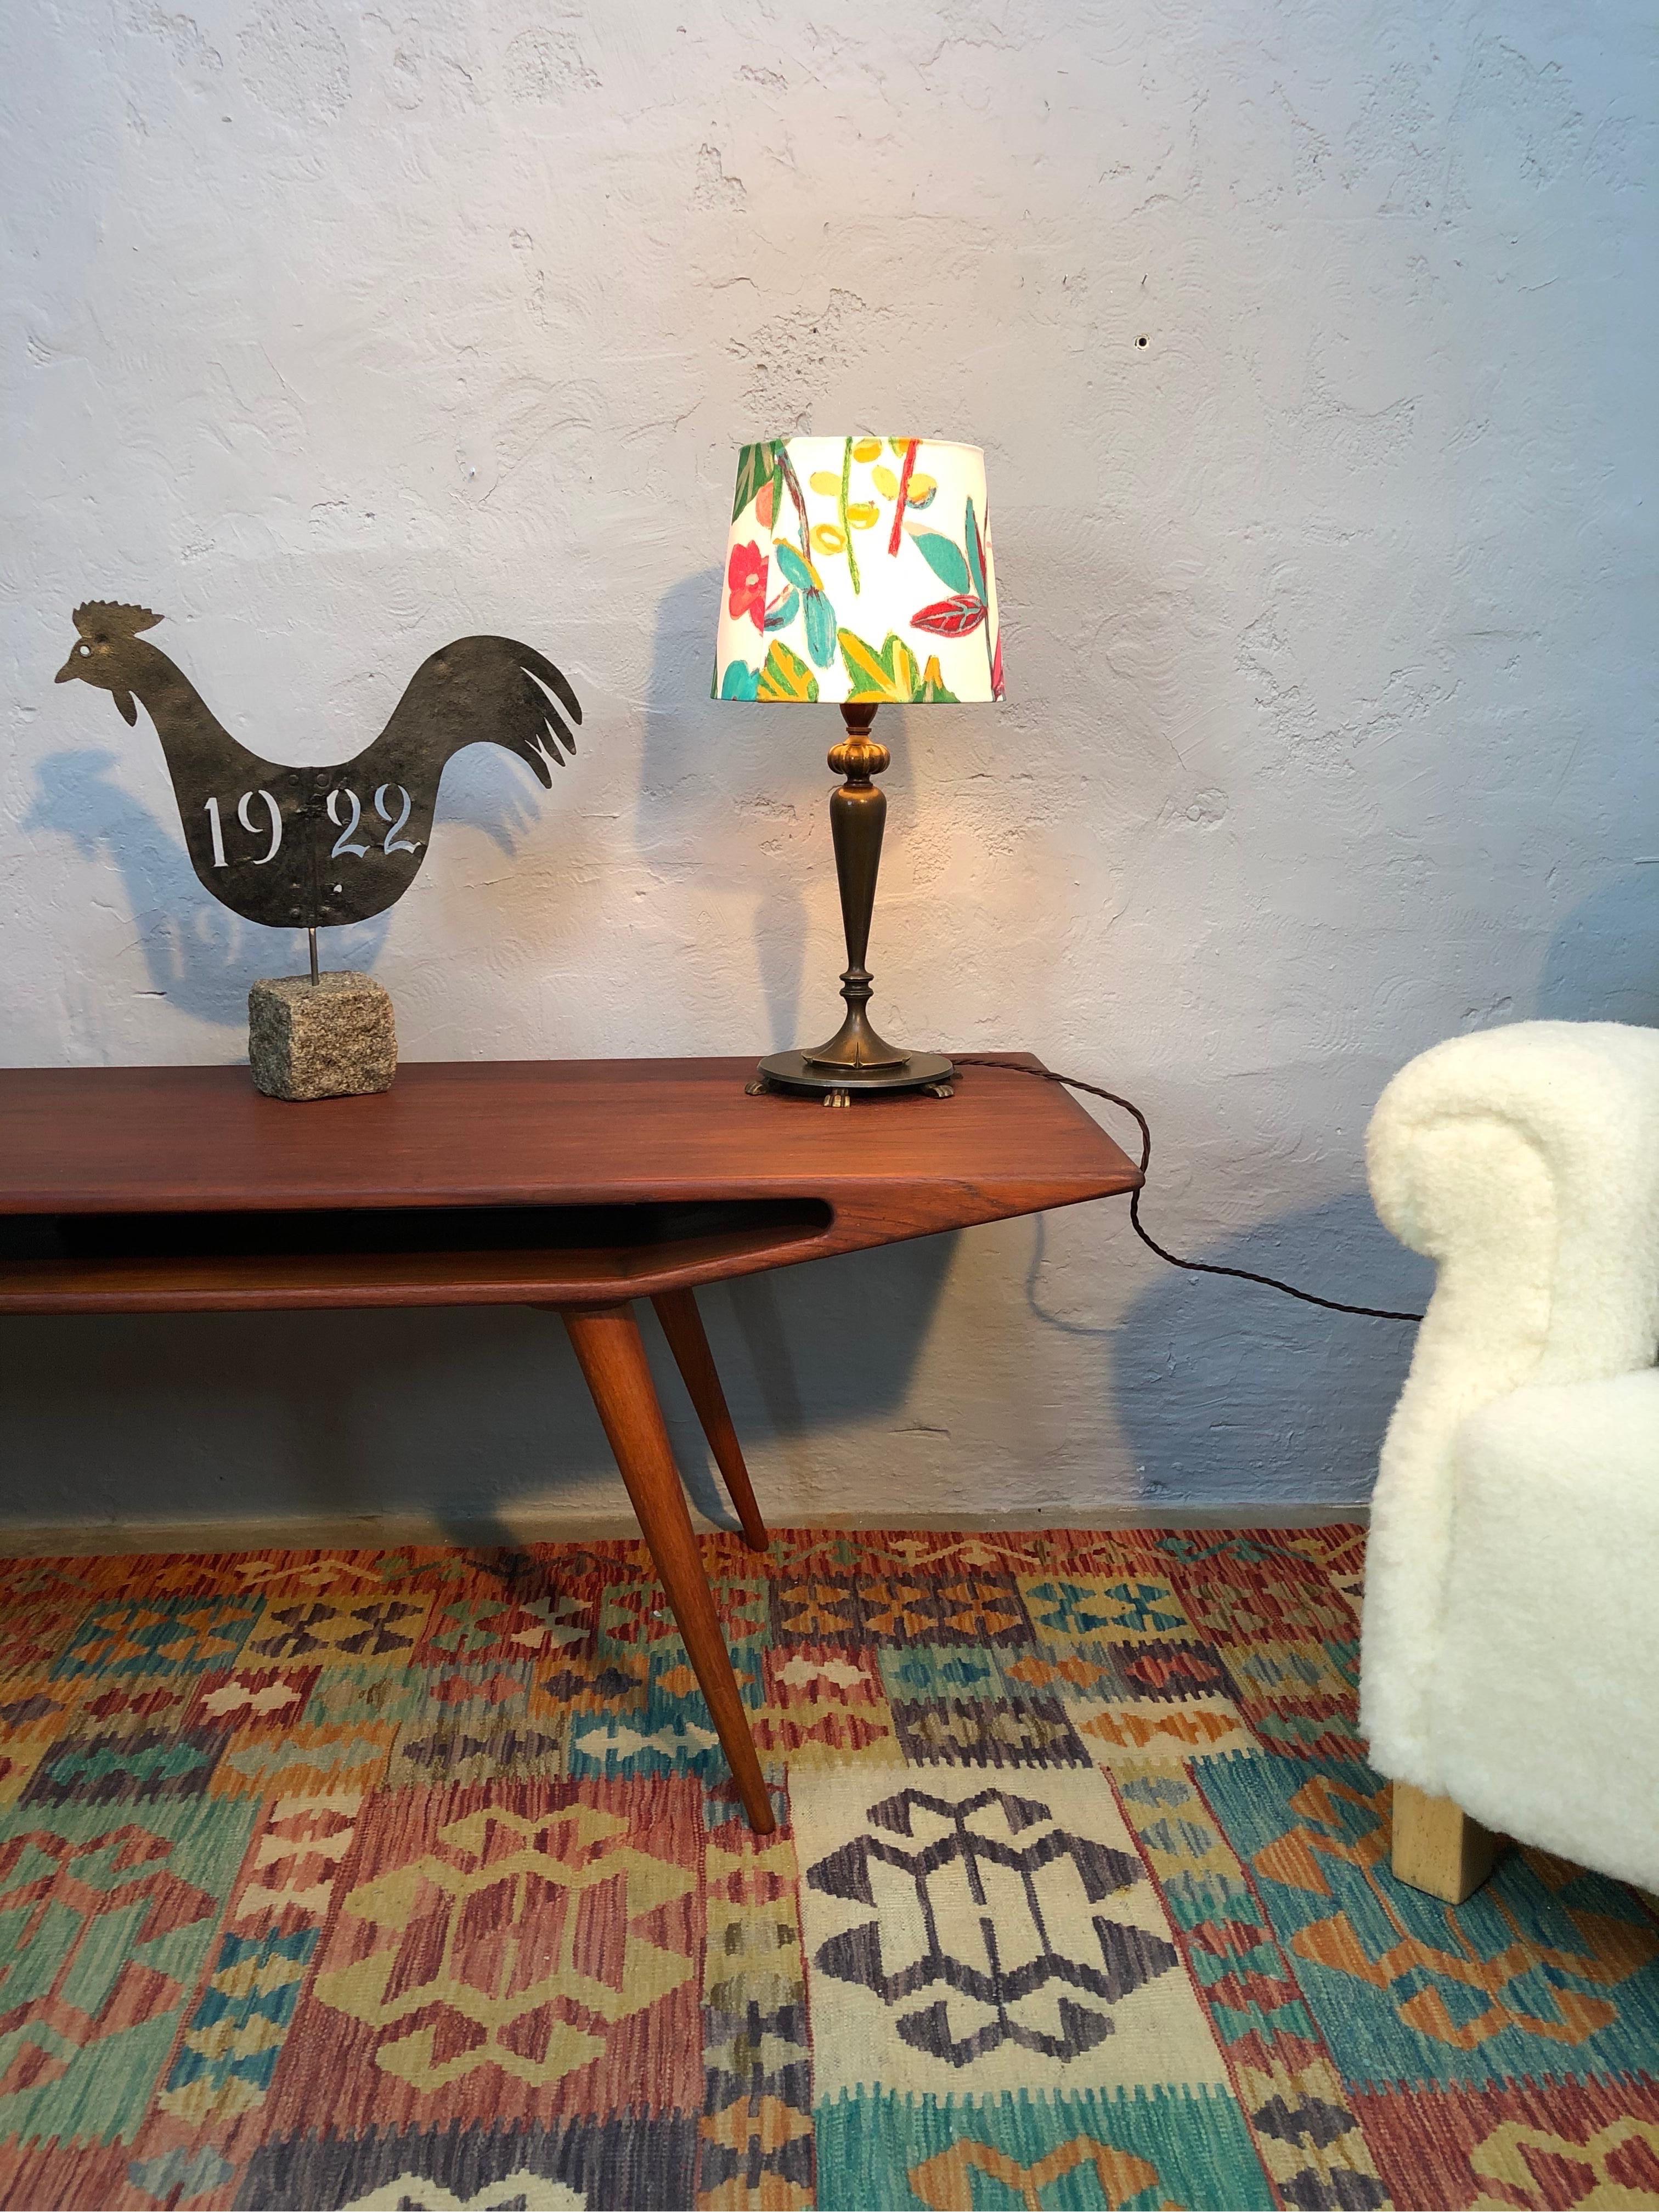 Stilvolle Art-Déco-Tischlampe mit schönem zeitgenössischem Design.
Aus Messing gegossen und auf sechs Krallenfüßen sitzend. 
Hübsche Farbe das Messing.
Große Qualität, typisch für diese Zeit.
Neu verdrahtet mit einem braunen, verdrillten